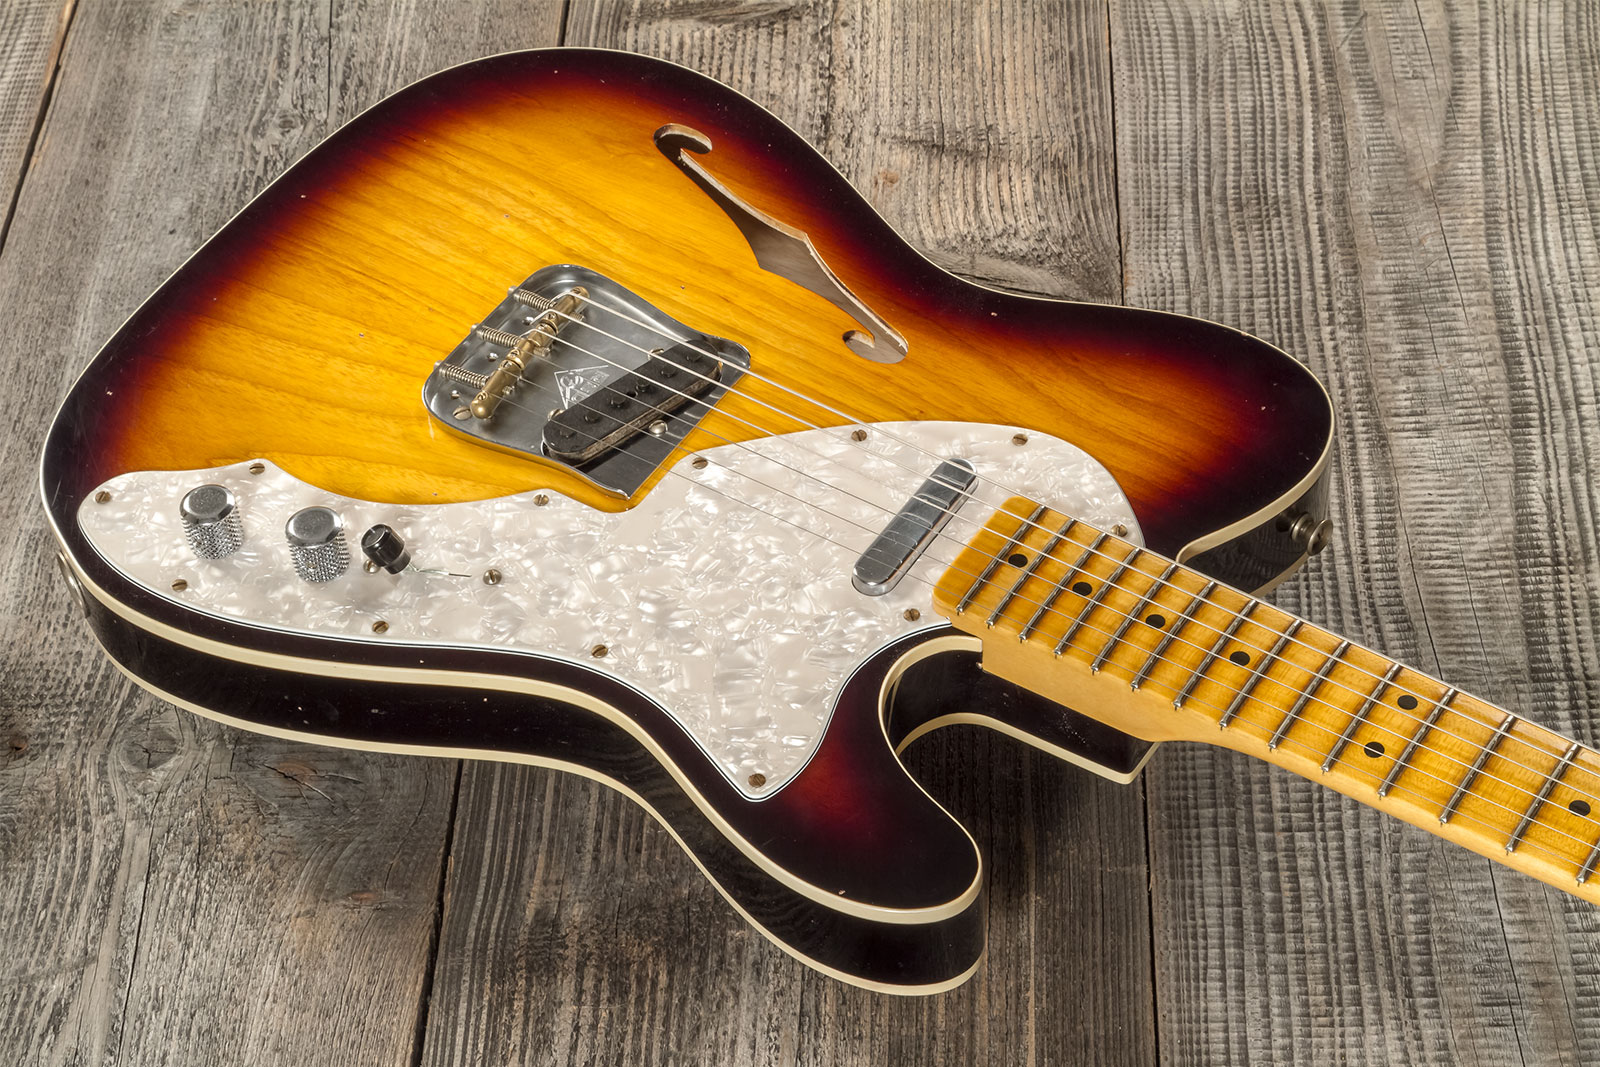 Fender Custom Shop Tele Thinline 50s Mn #cz574212 - Journeyman Relic Aged 2-color Sunburst - Guitarra eléctrica con forma de tel - Variation 3